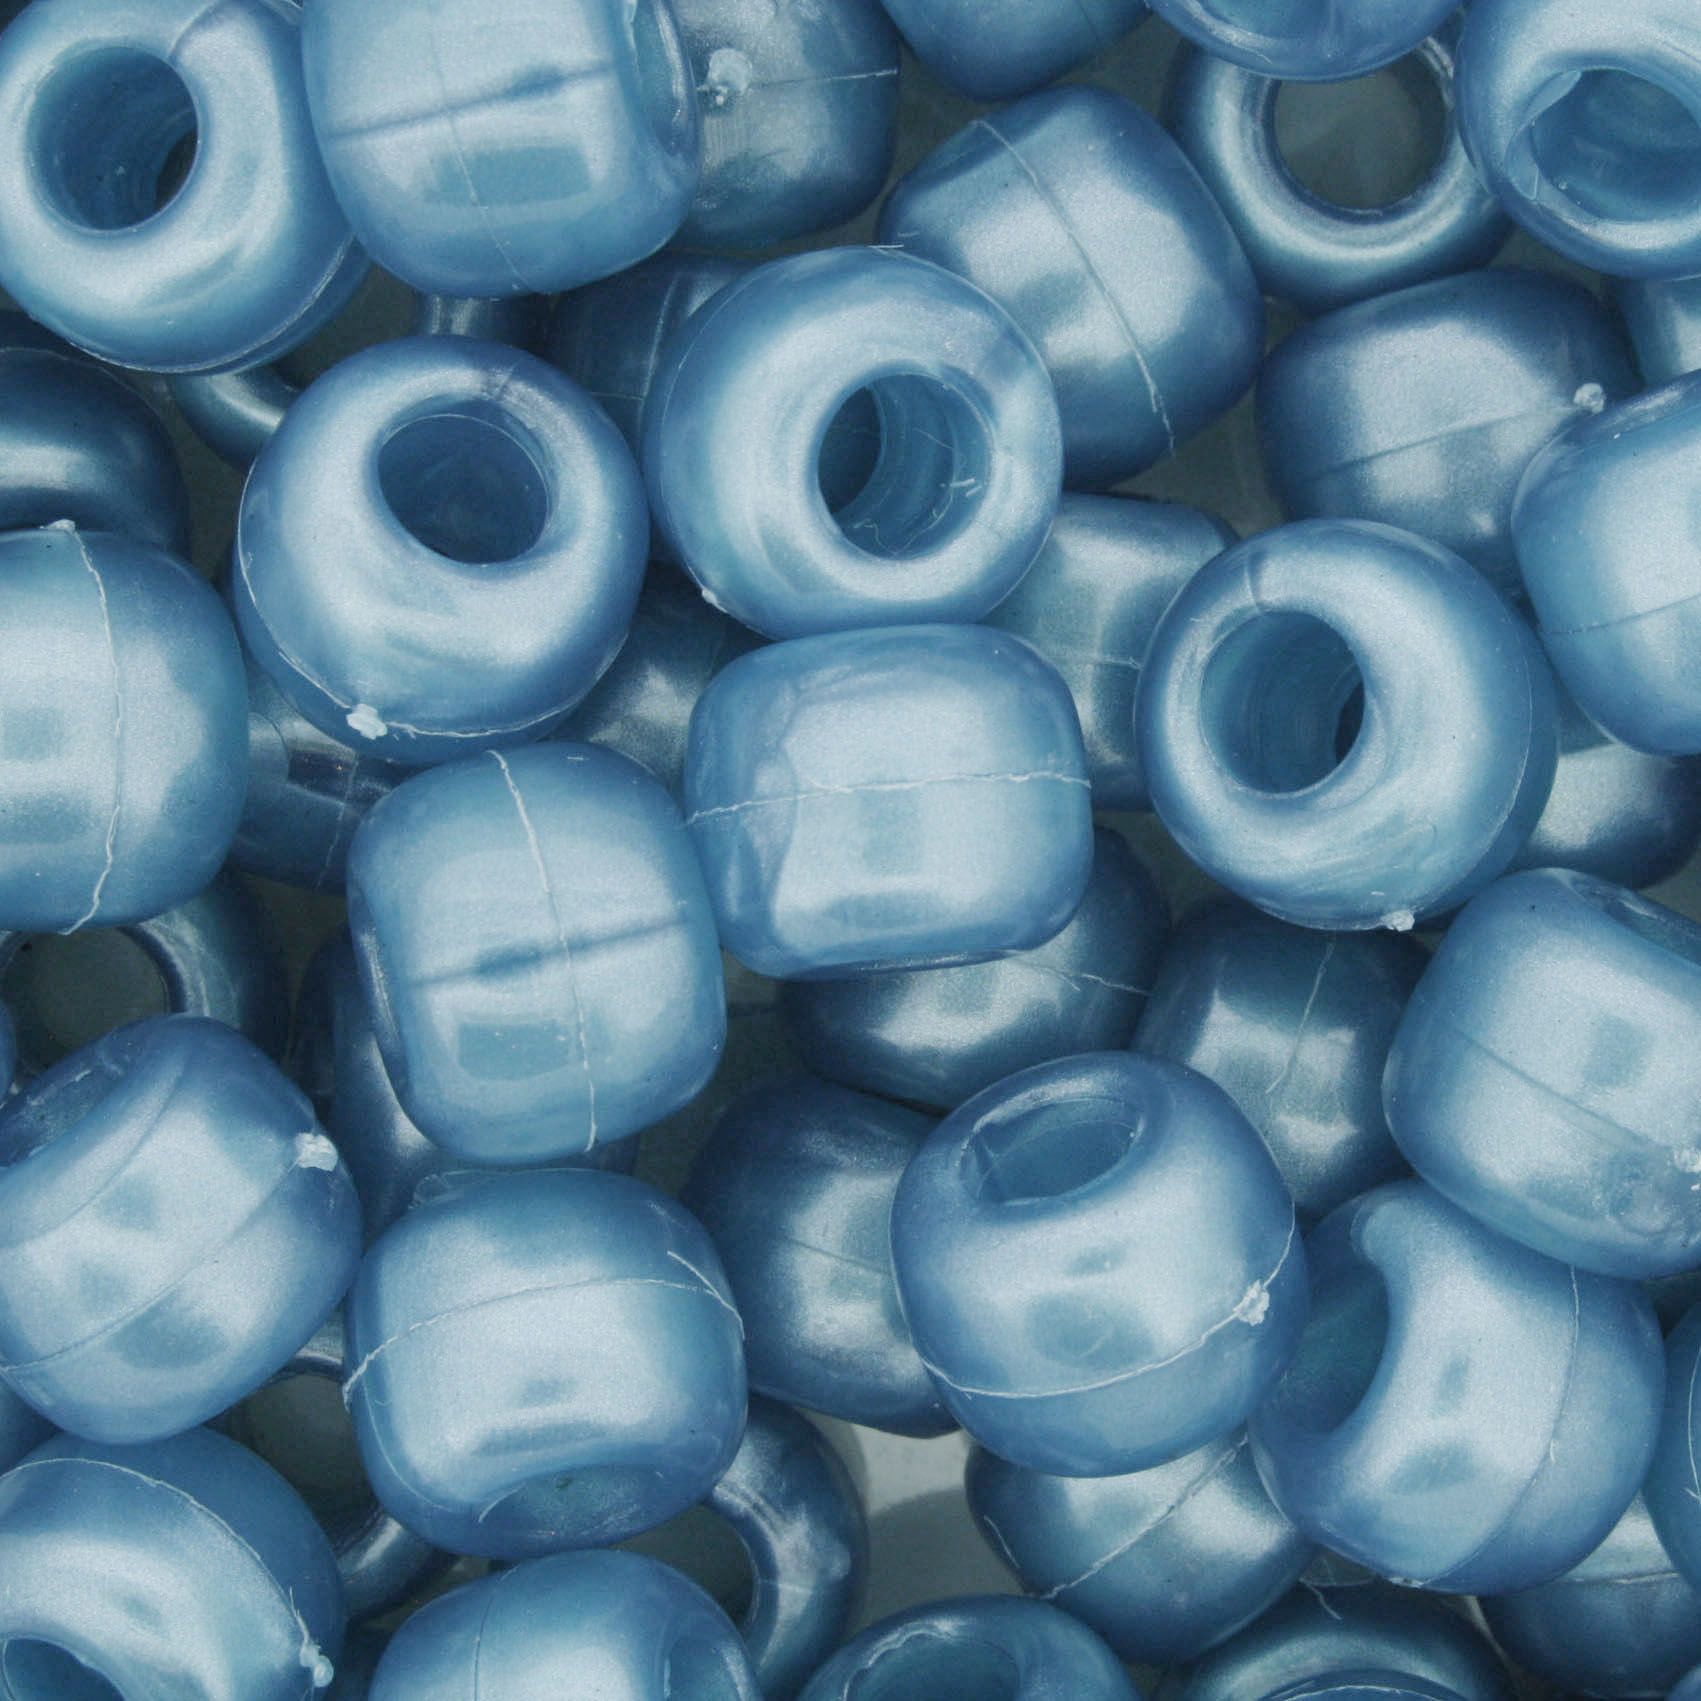 Miçangão Plástico - Tererê® - Azul Perolado  - Stéphanie Bijoux® - Peças para Bijuterias e Artesanato